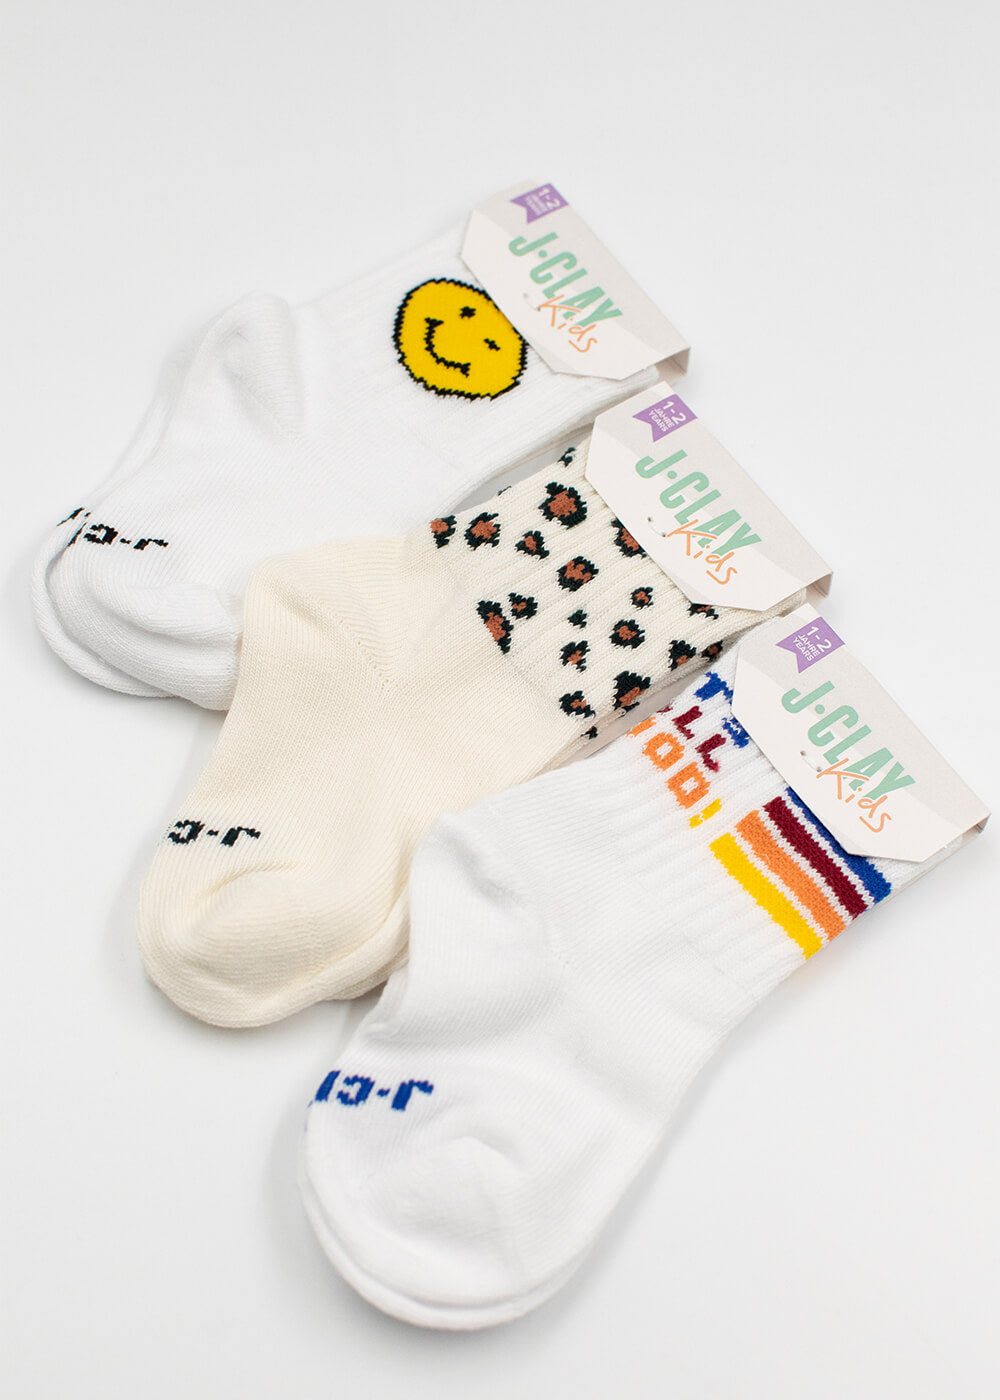 Socken für kinder